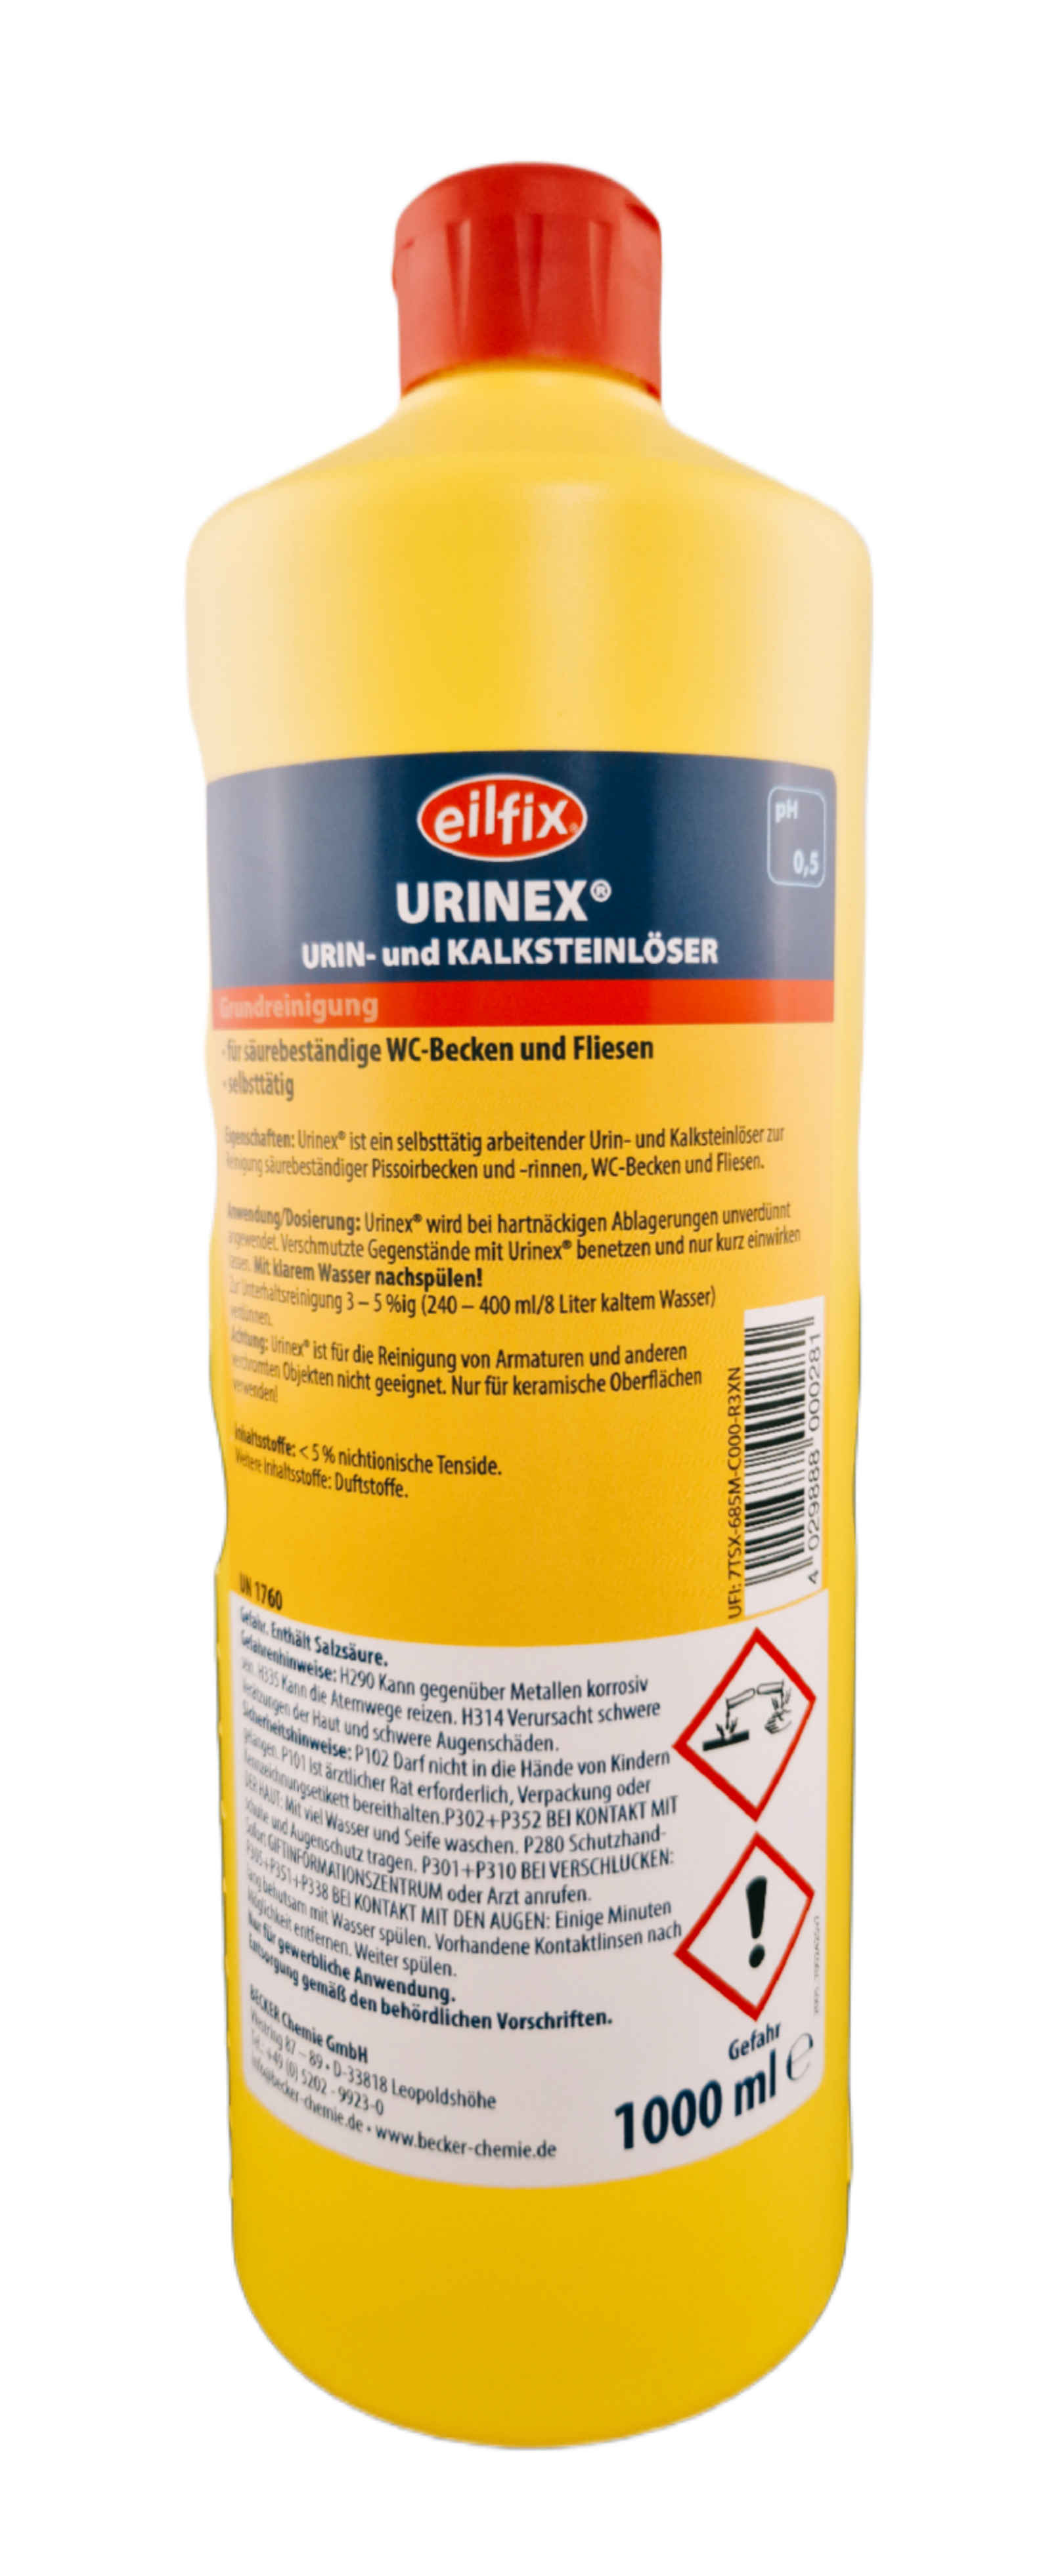 Eilfix - Urinex Urin- und Kalksteinlöser